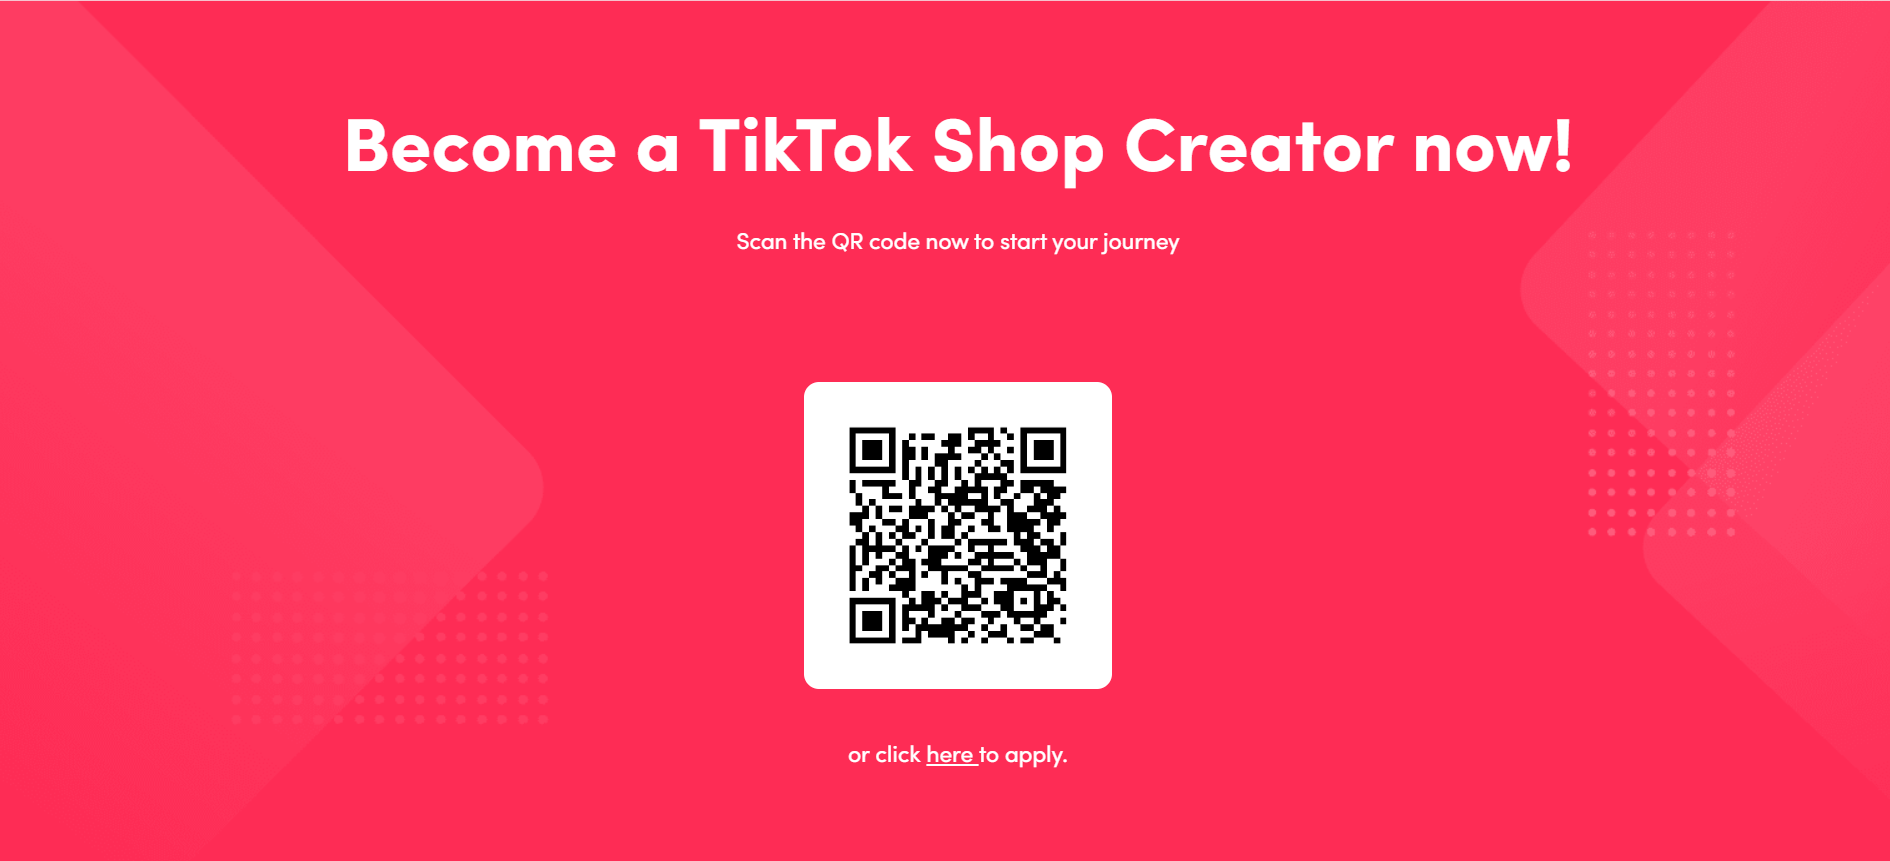 QR-код для регистрации в Tik Tok Shop.